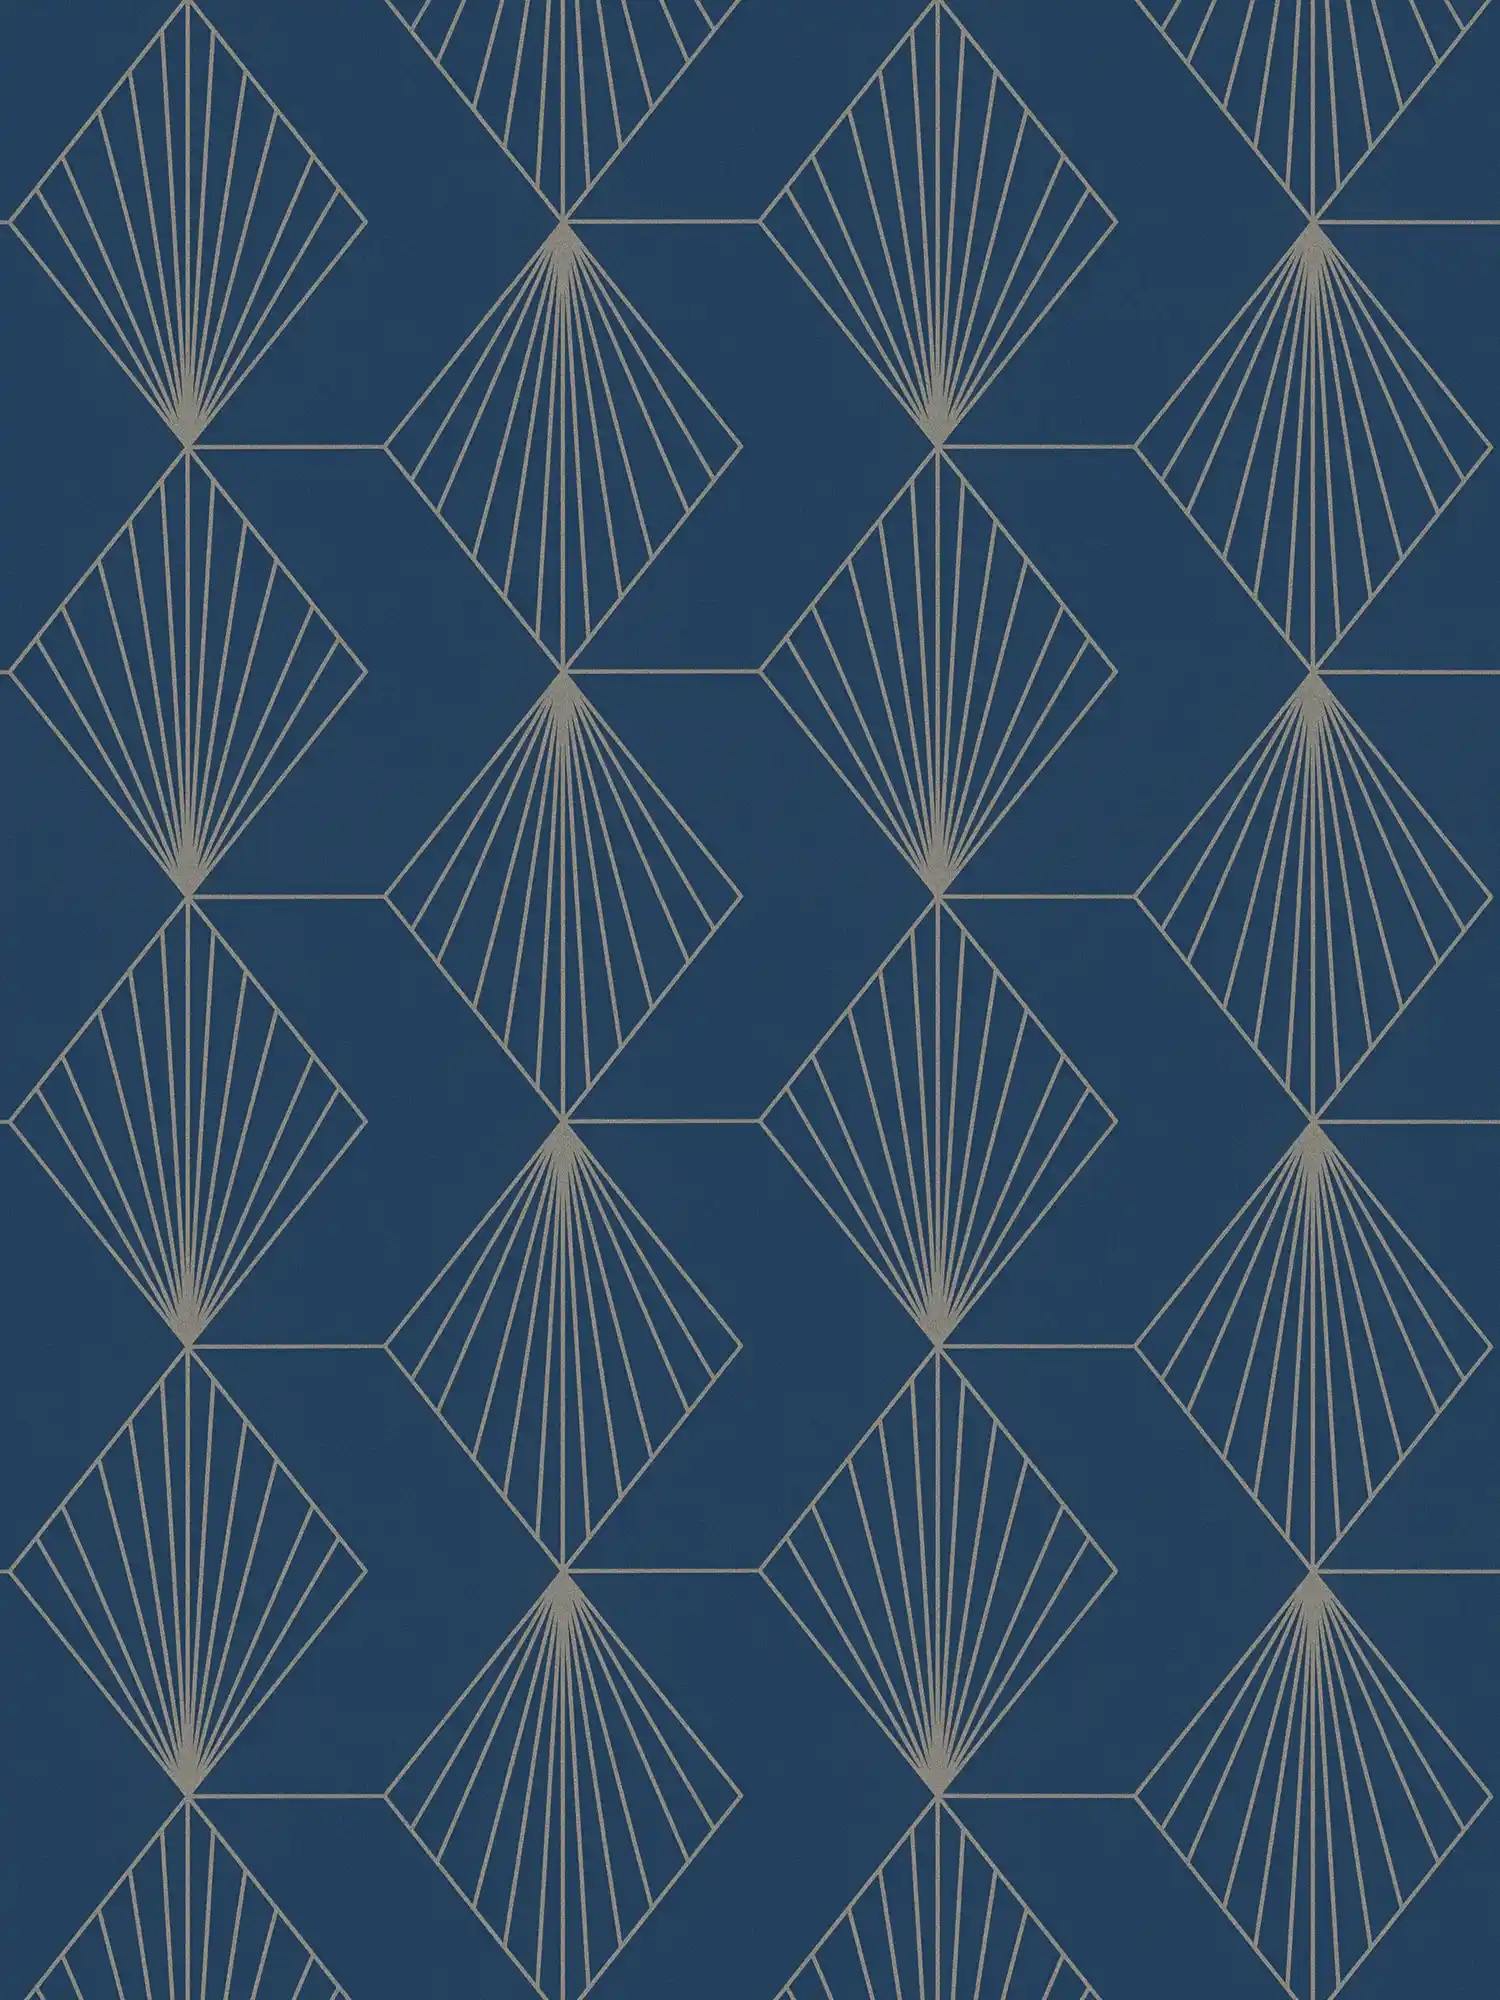         Design vliesbehang met grafisch patroon in Art Deco stijl - blauw, goud
    